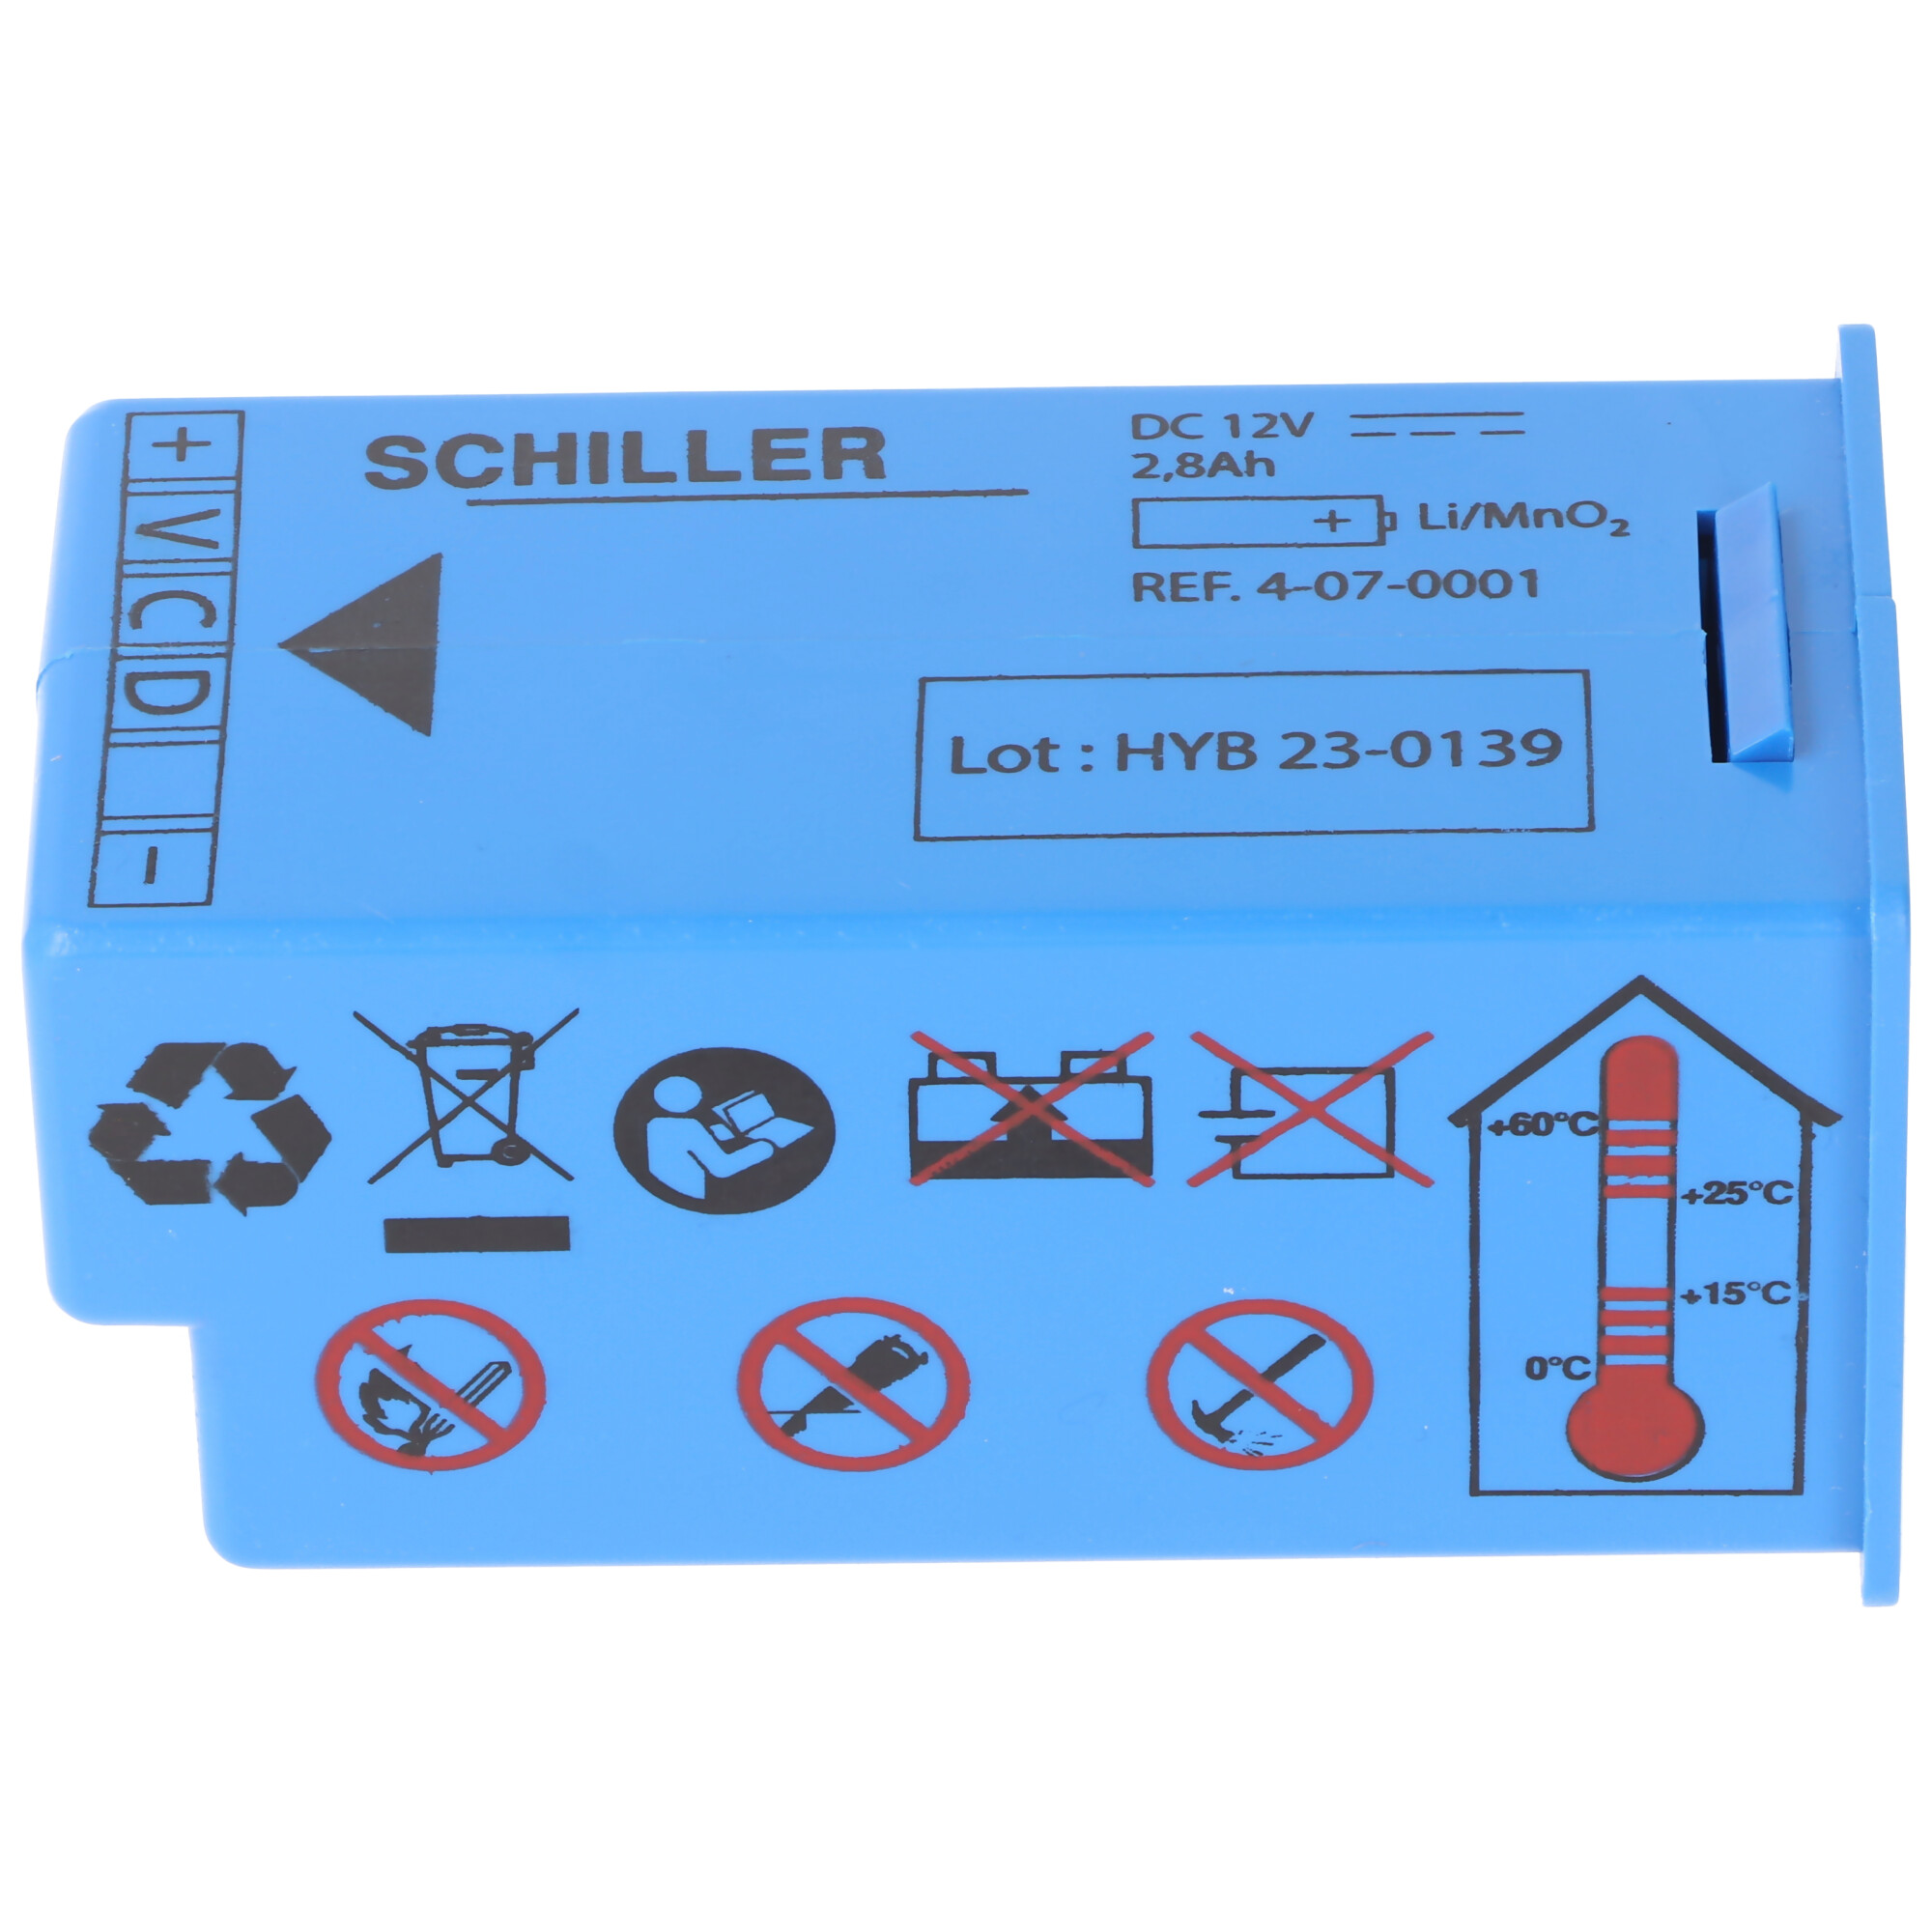 Original Lithiumbatterie Bruker, Schiller Defibrillator Fred easy